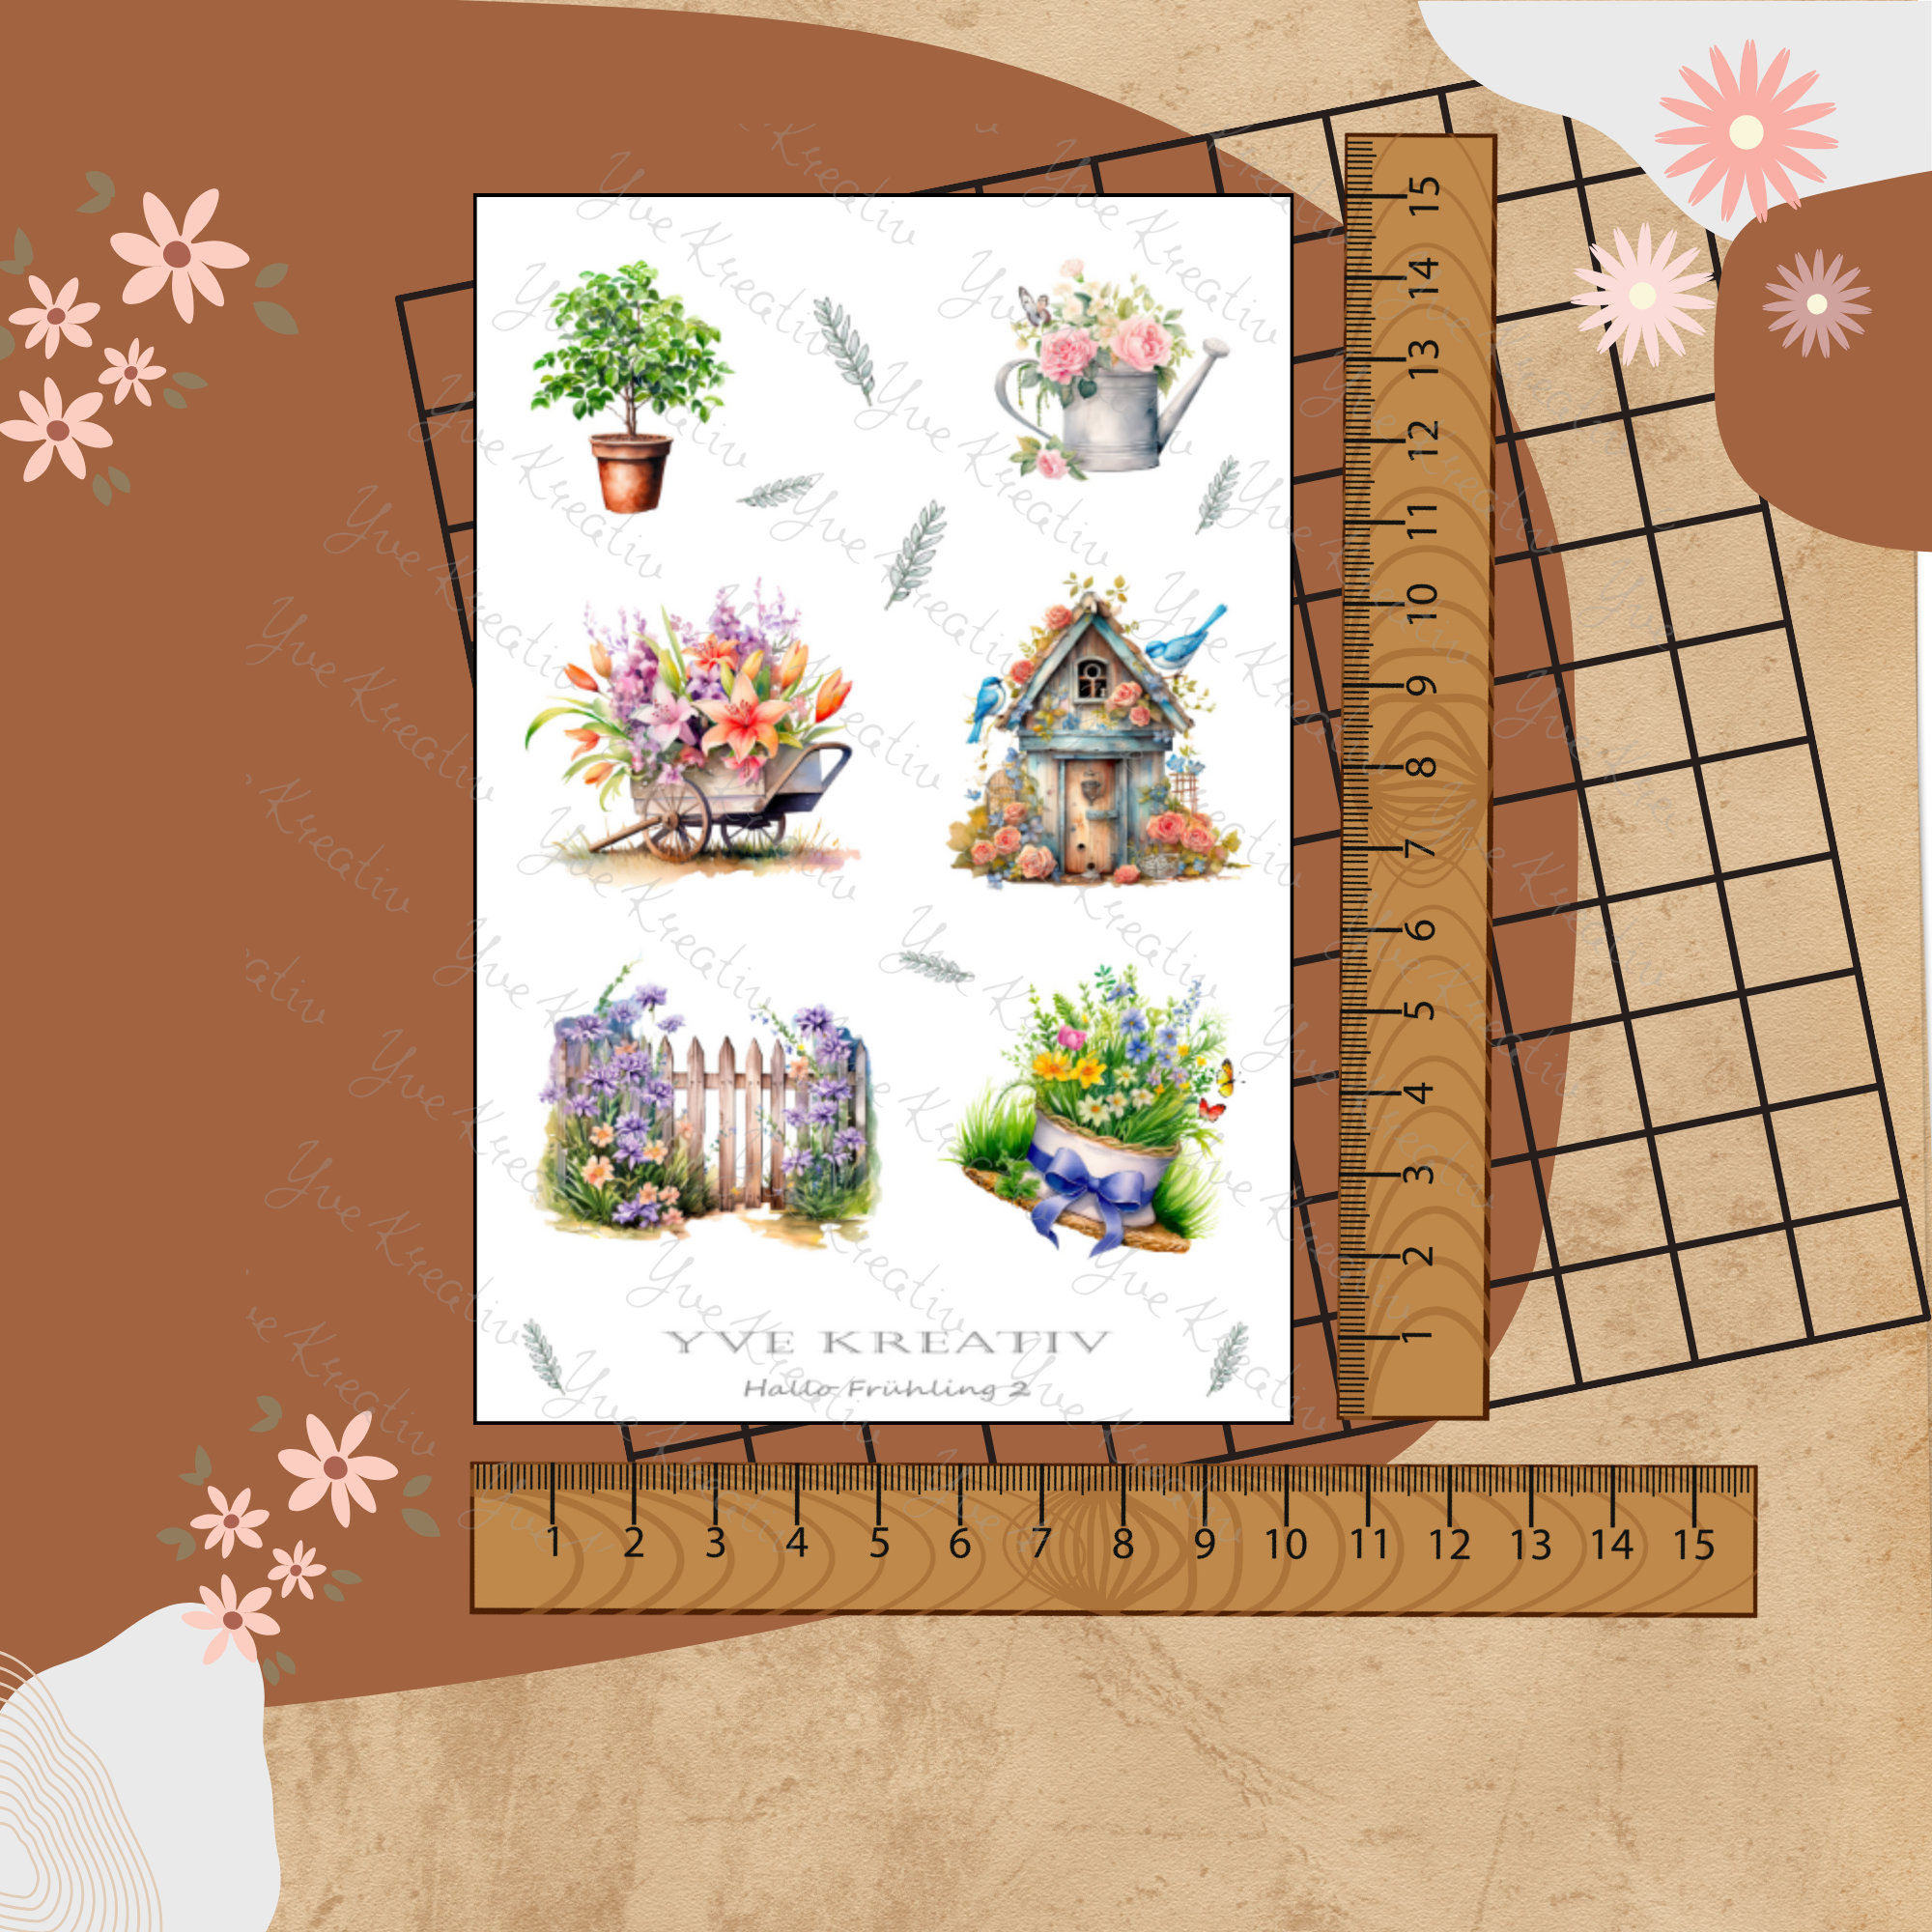 Sticker Bogen "Frühling Garten Pflanzen" | Sticker Set - Aufkleber 2 Stickerbogen zur Auswahl in Weiß - Transparent - Matt - Glanz